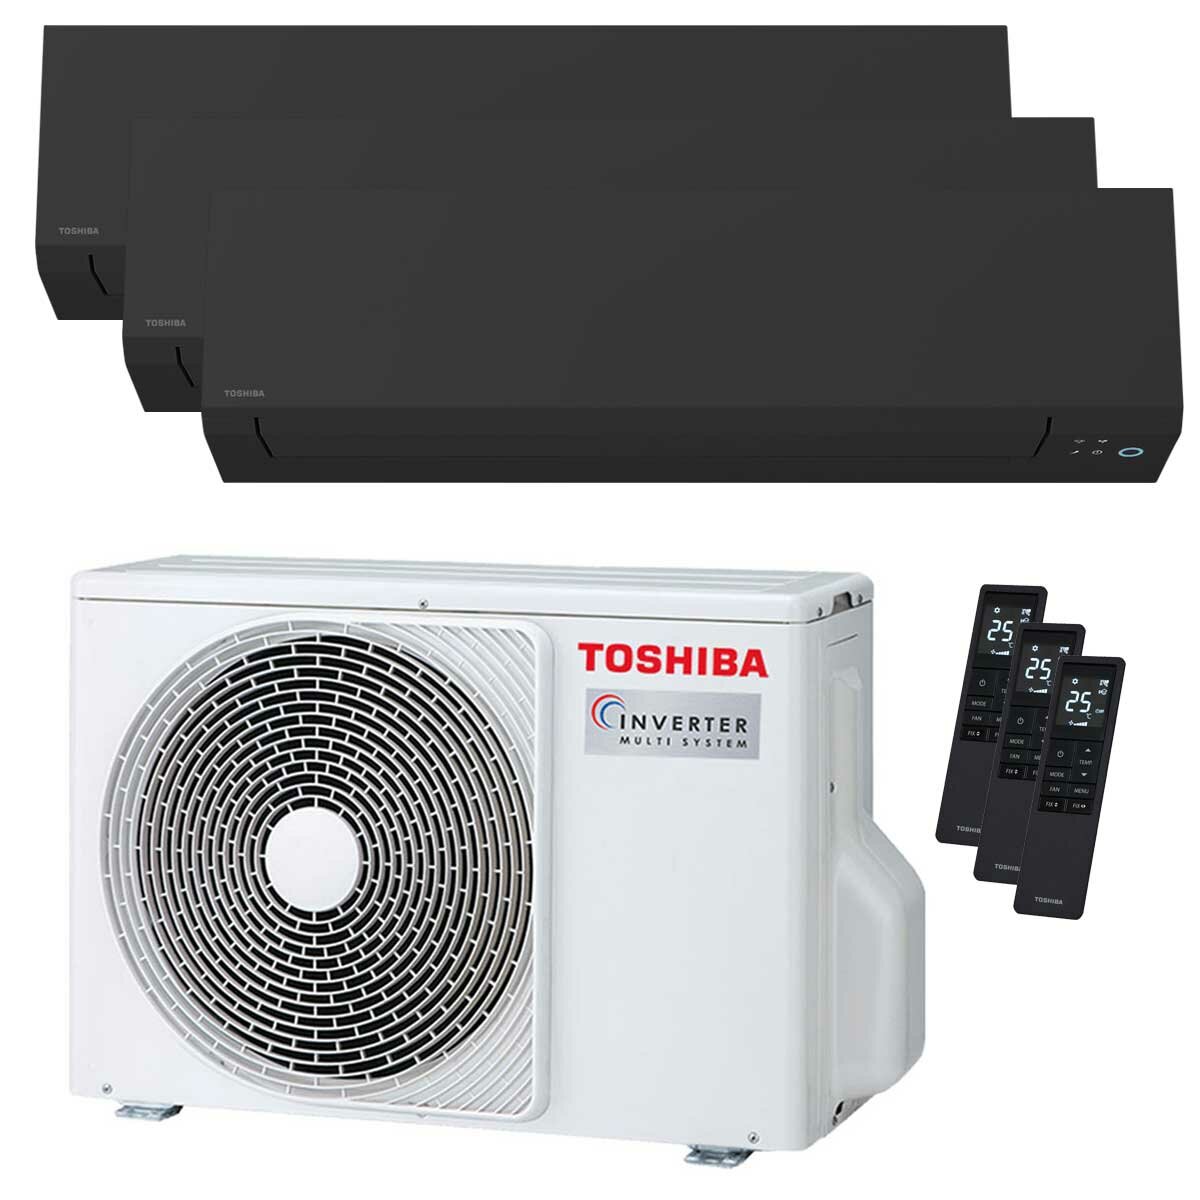 Toshiba SHORAI Edge Black climatiseur trial split 7000+9000+12000 BTU inverseur A+++ unité extérieure wifi 5,2 kW 